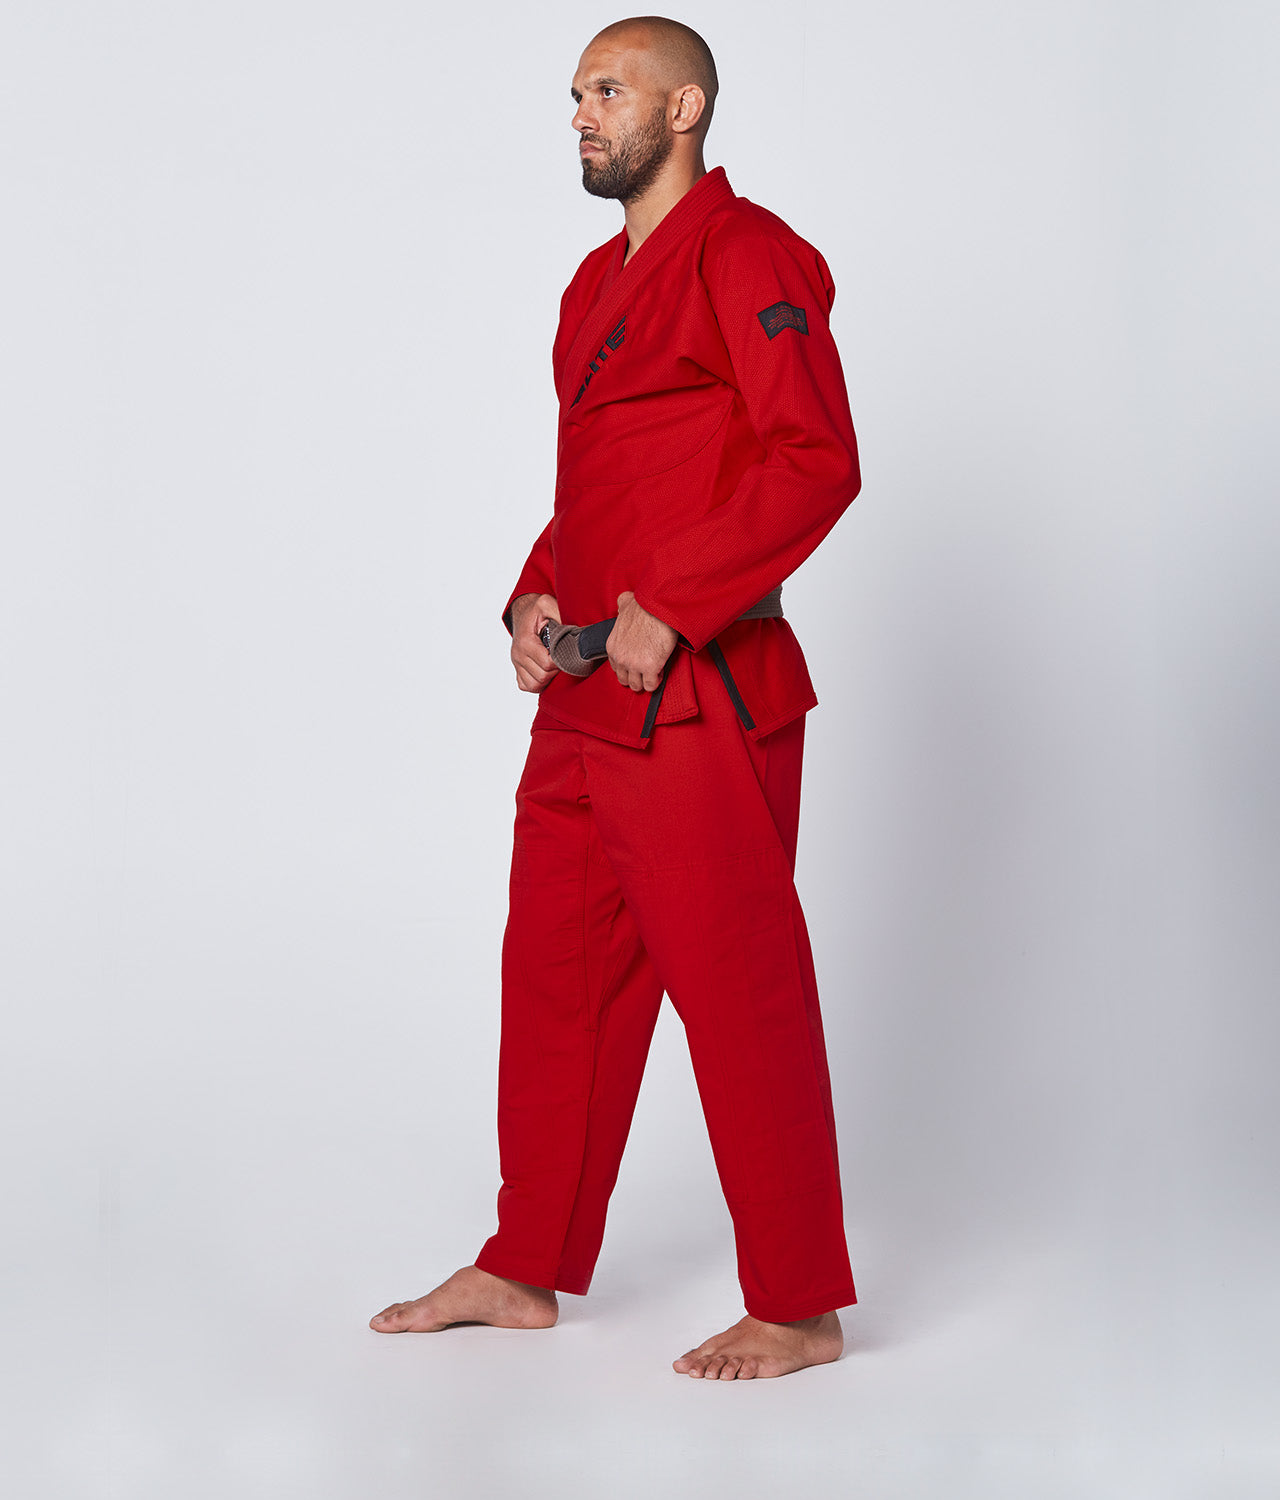 Elite Sports Men's Core Red Brazilian Jiu Jitsu BJJ Gi